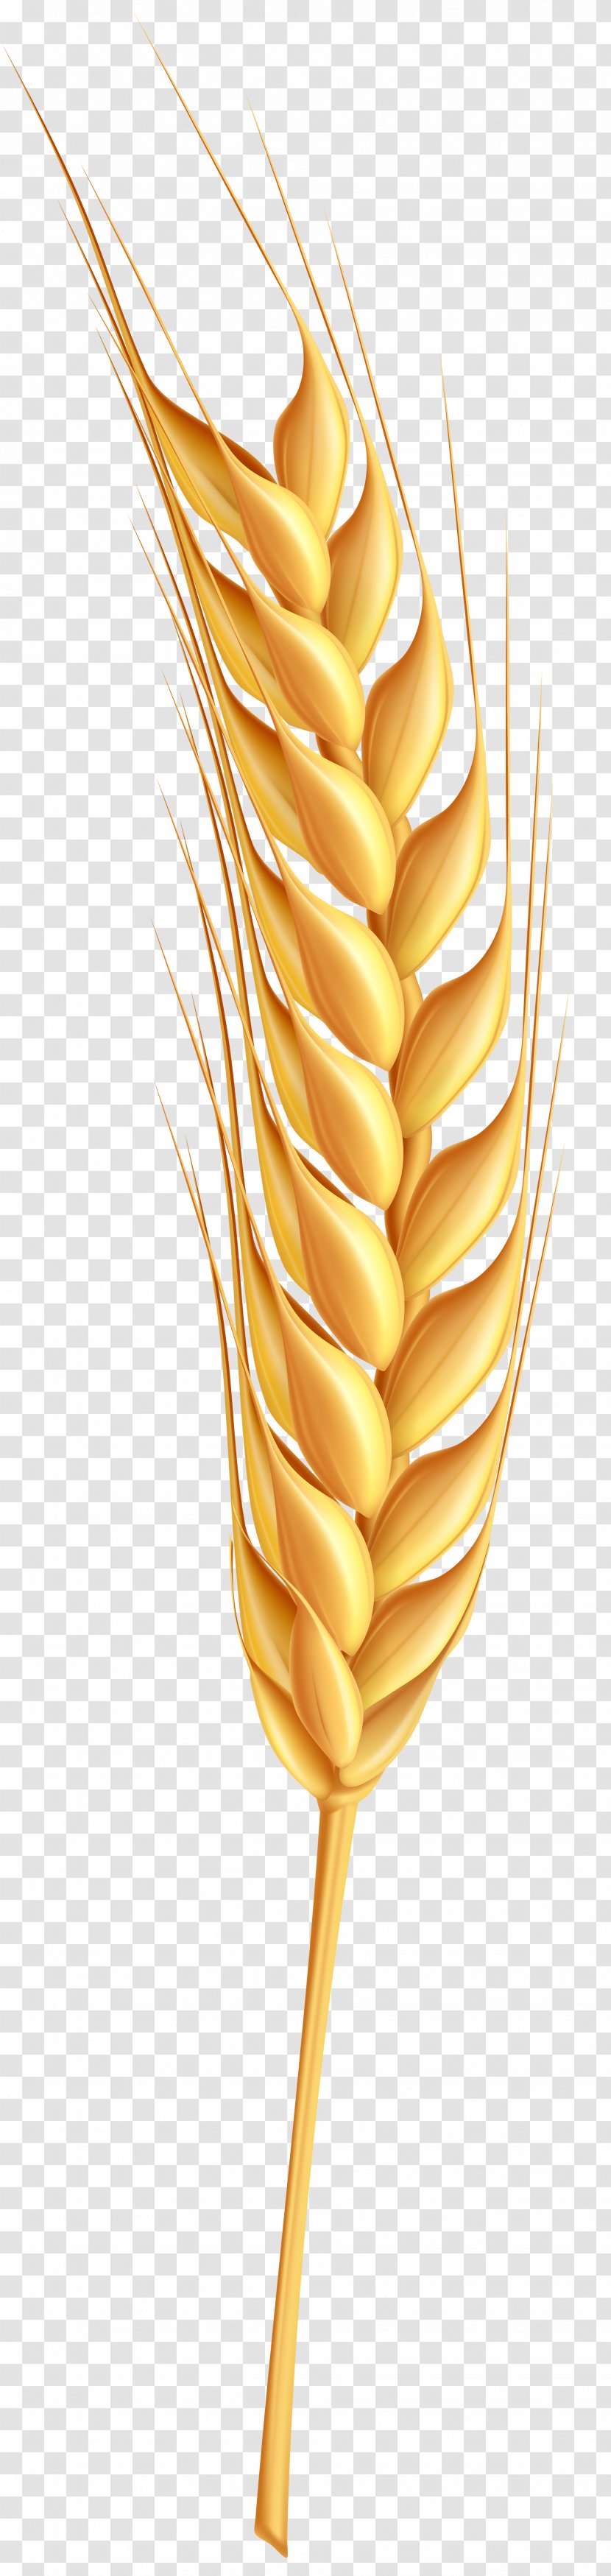 Wheat Clip Art - Plant Stem Transparent PNG